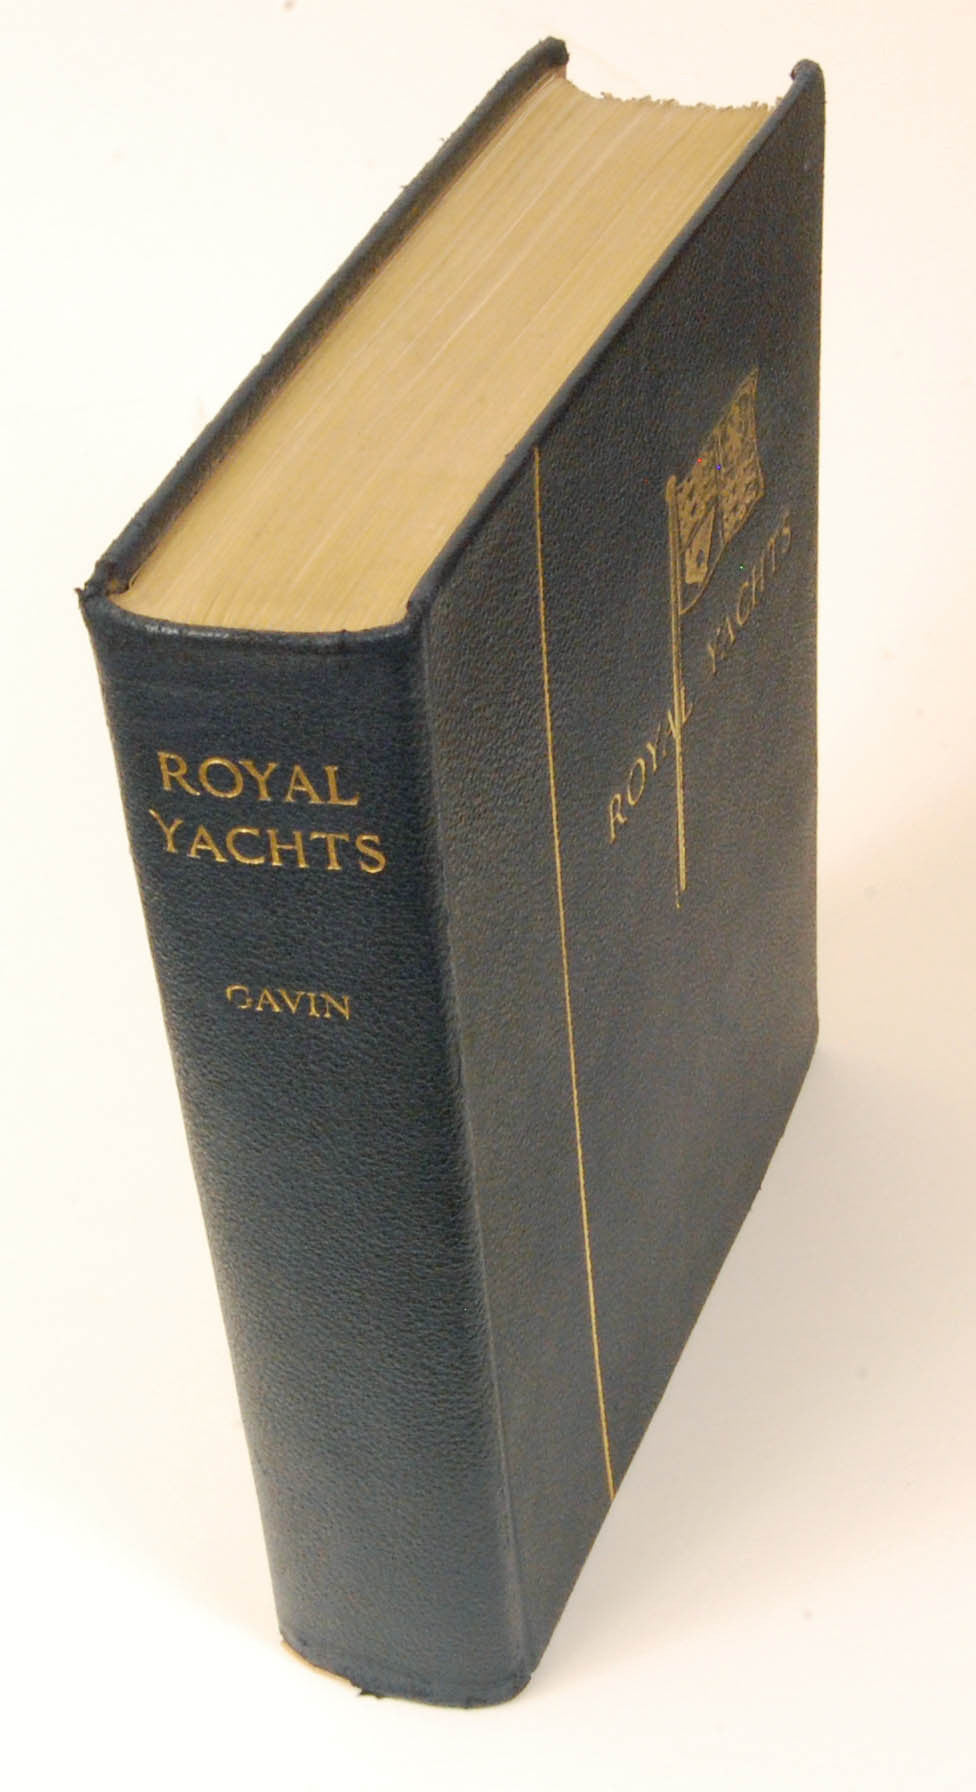 Book - Royal Yachts by Charles Murray Gavin